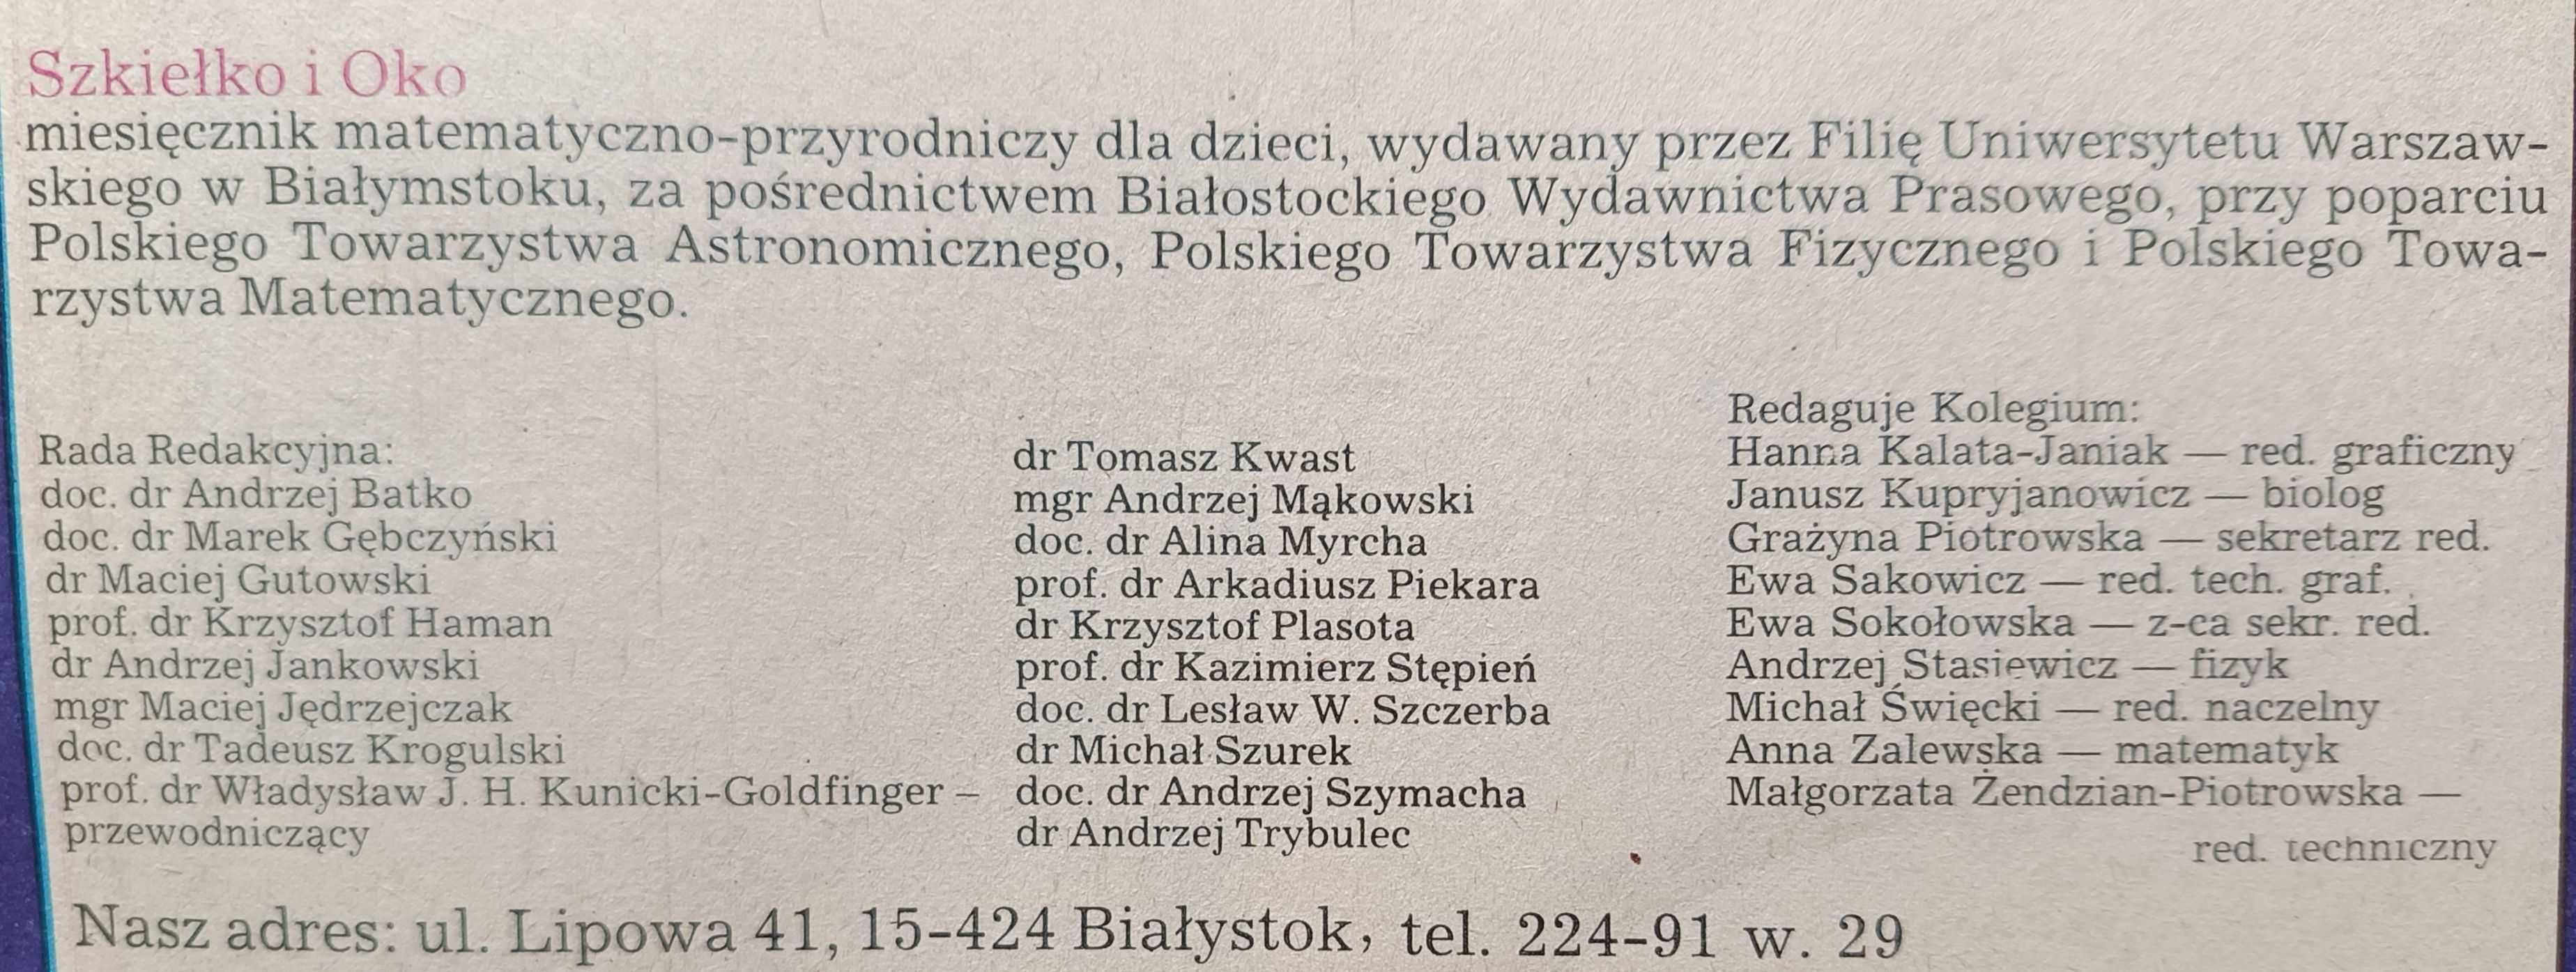 Czasopismo naukowe dla dzieci "Szkiełko i Oko" rocznik 1987